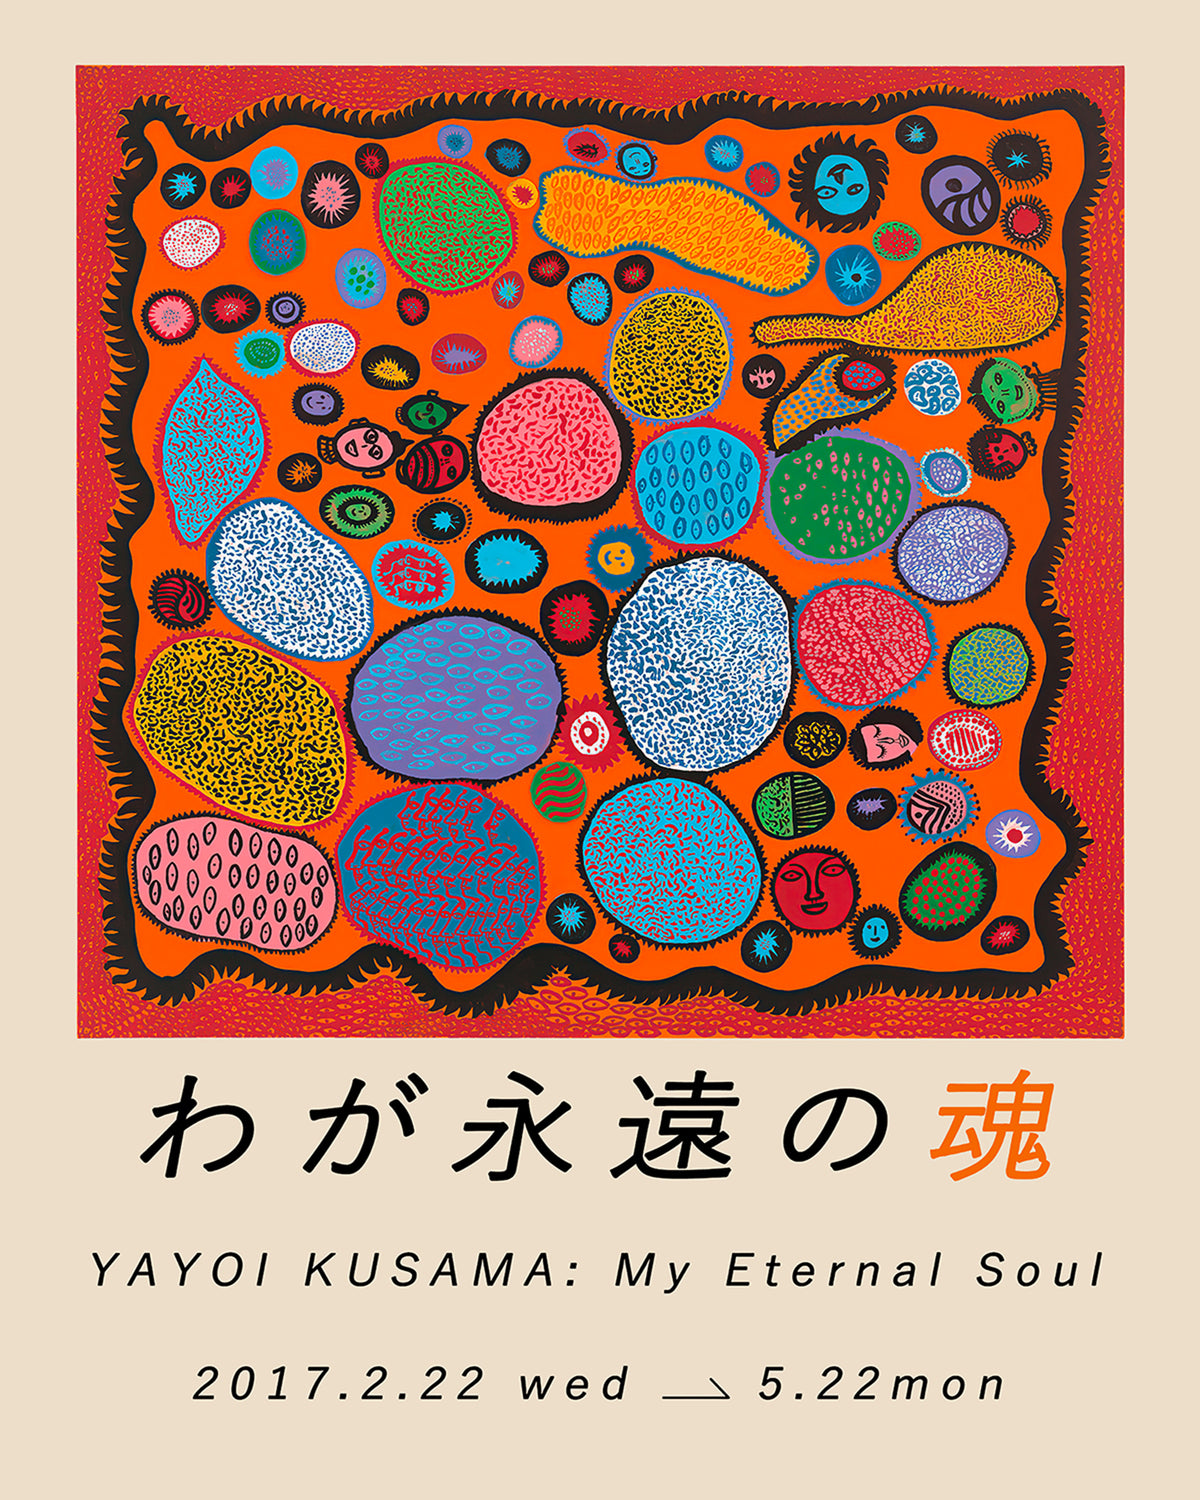 My Eternal Soul by Yayoi Kusama